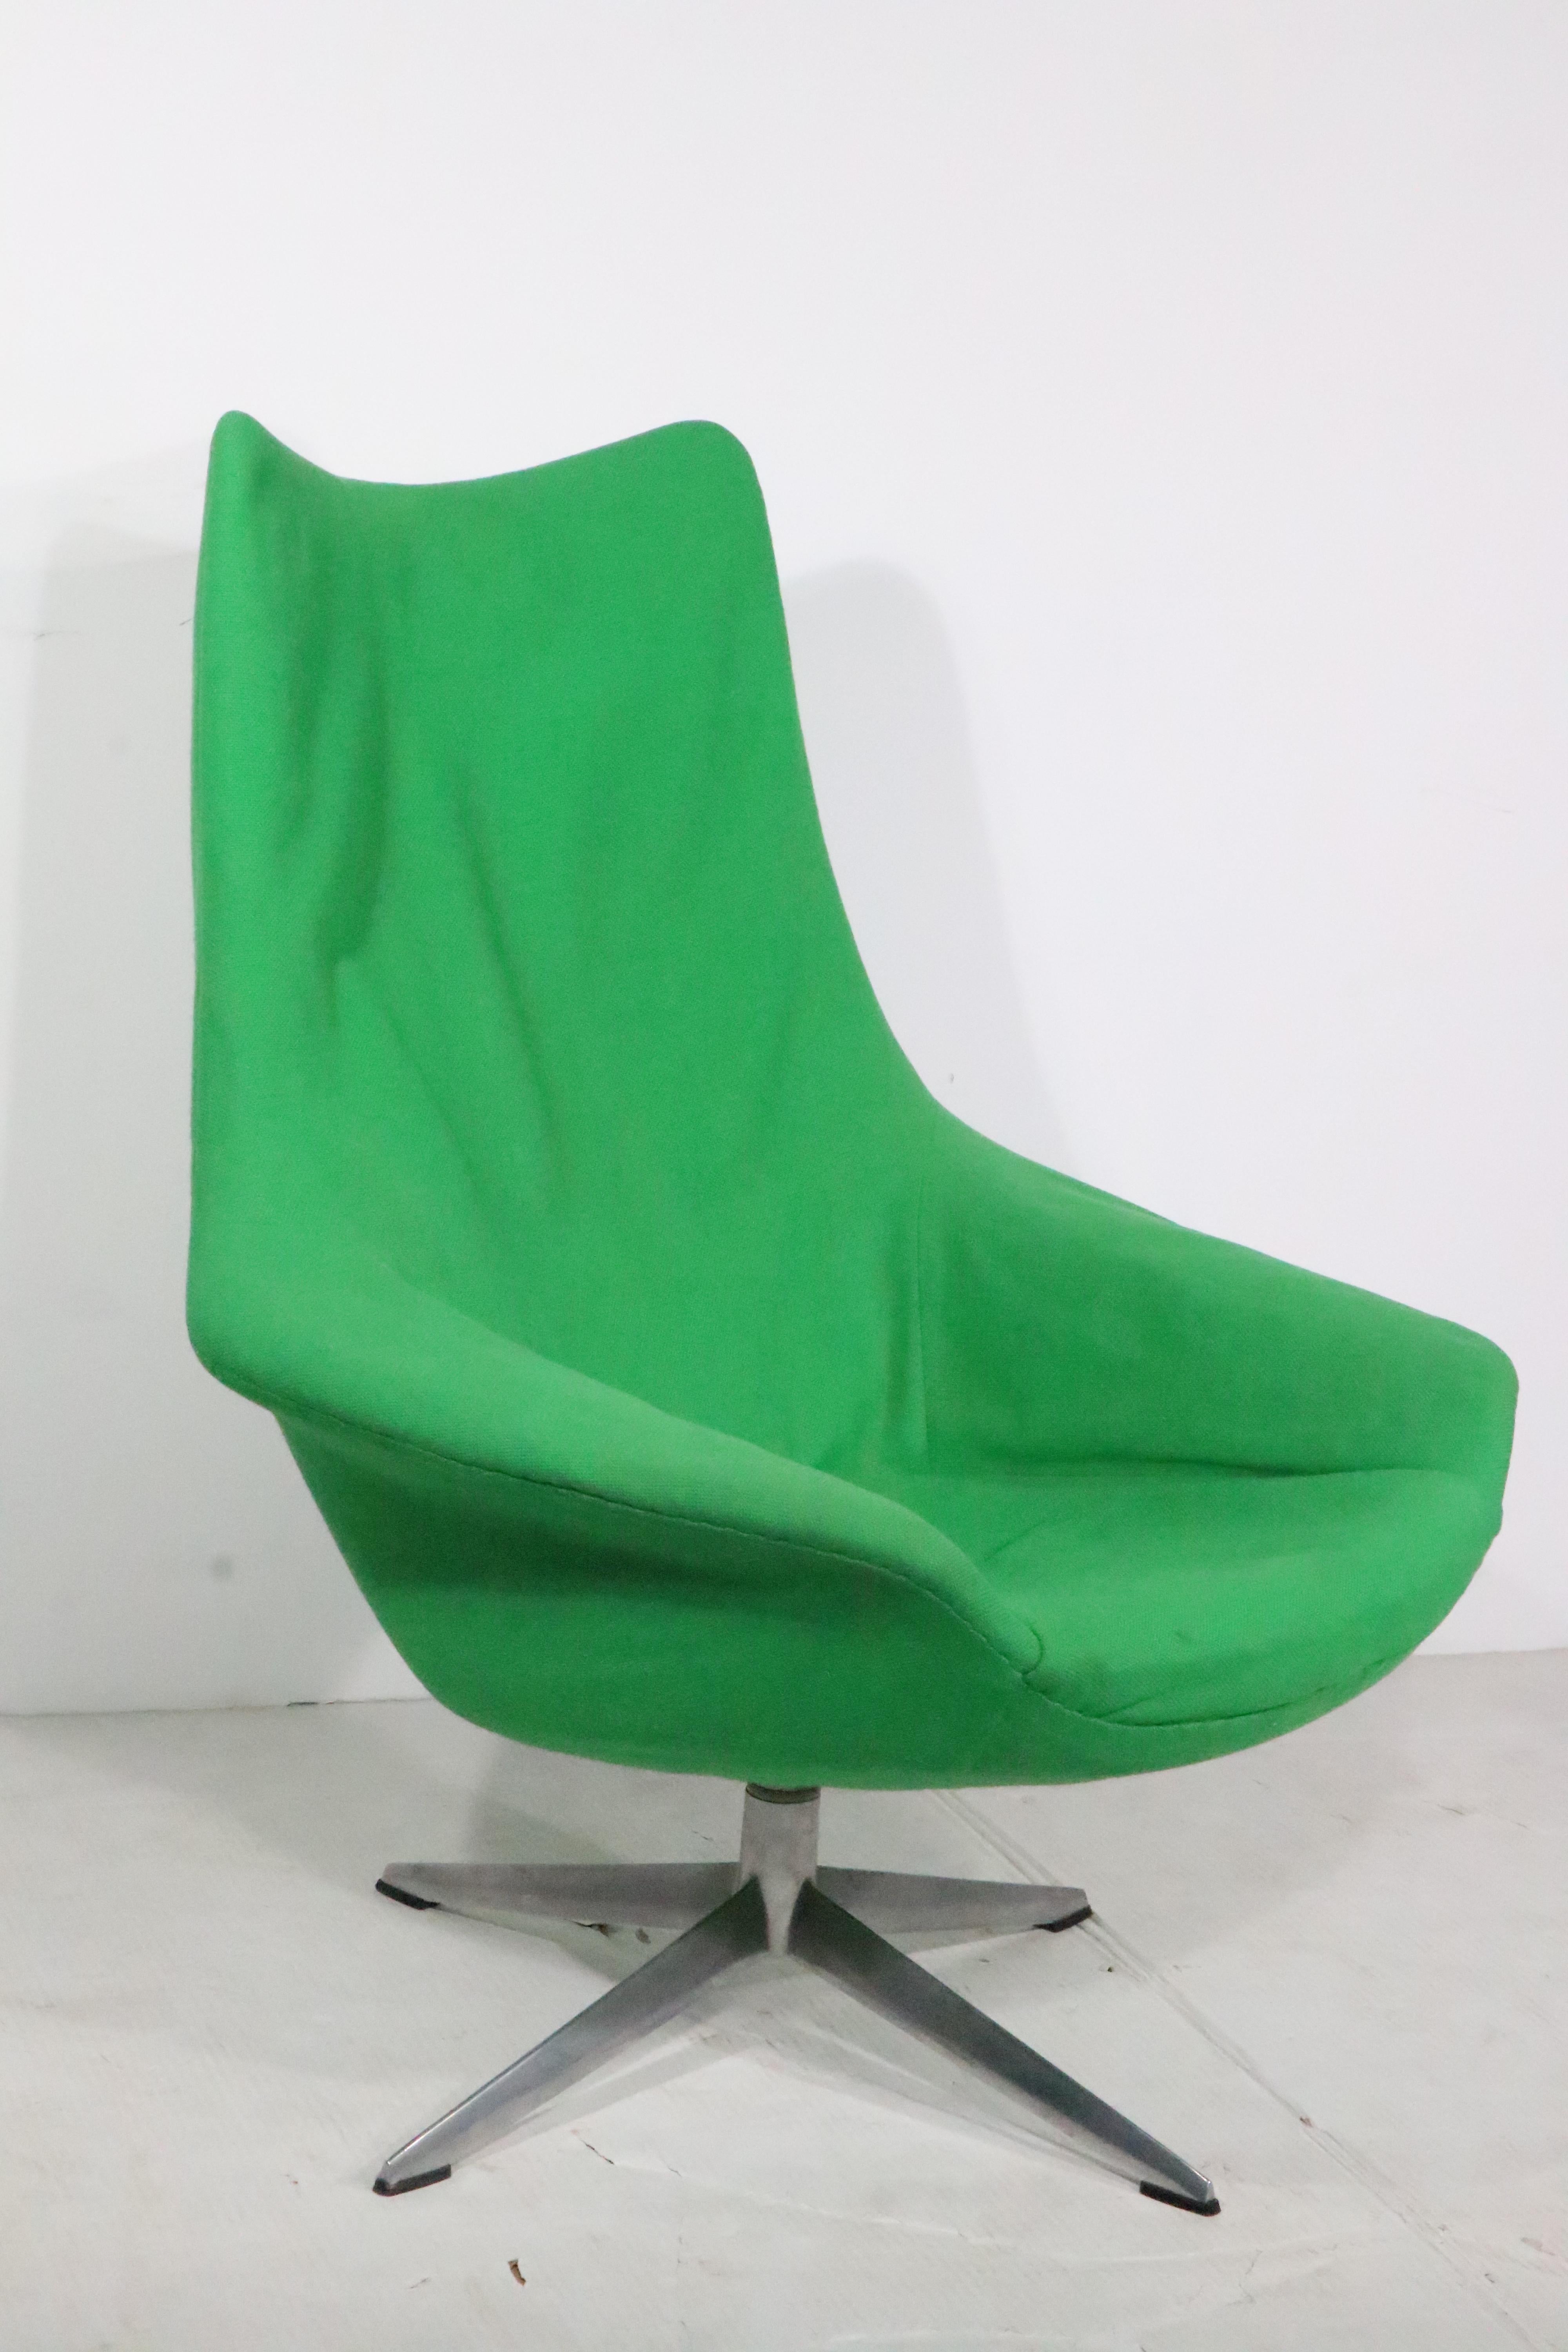 Fauteuil pivotant Icone du milieu du siècle dernier, par H.W. Klein pour Brahmin Mobelfabrik, fabriqué au Danemark vers les années 1970. La chaise est dotée d'une base sculpturale en aluminium moulé à quatre étoiles et d'une assise rembourrée en